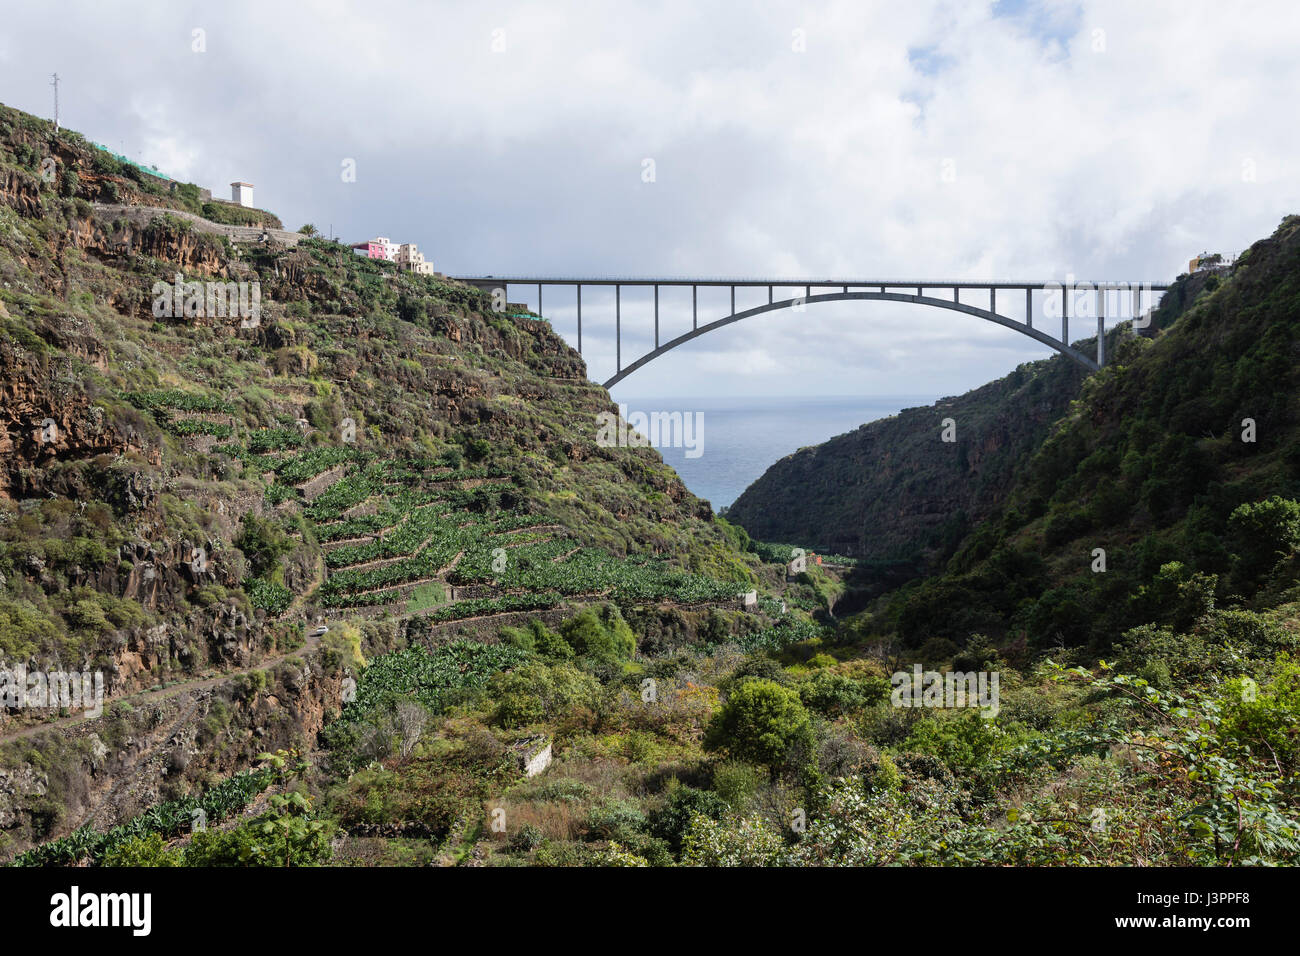 Bridge Puente de Los Tilos, Barranco de Agua, San Andres y Sauces, La Palma, Spain Stock Photo